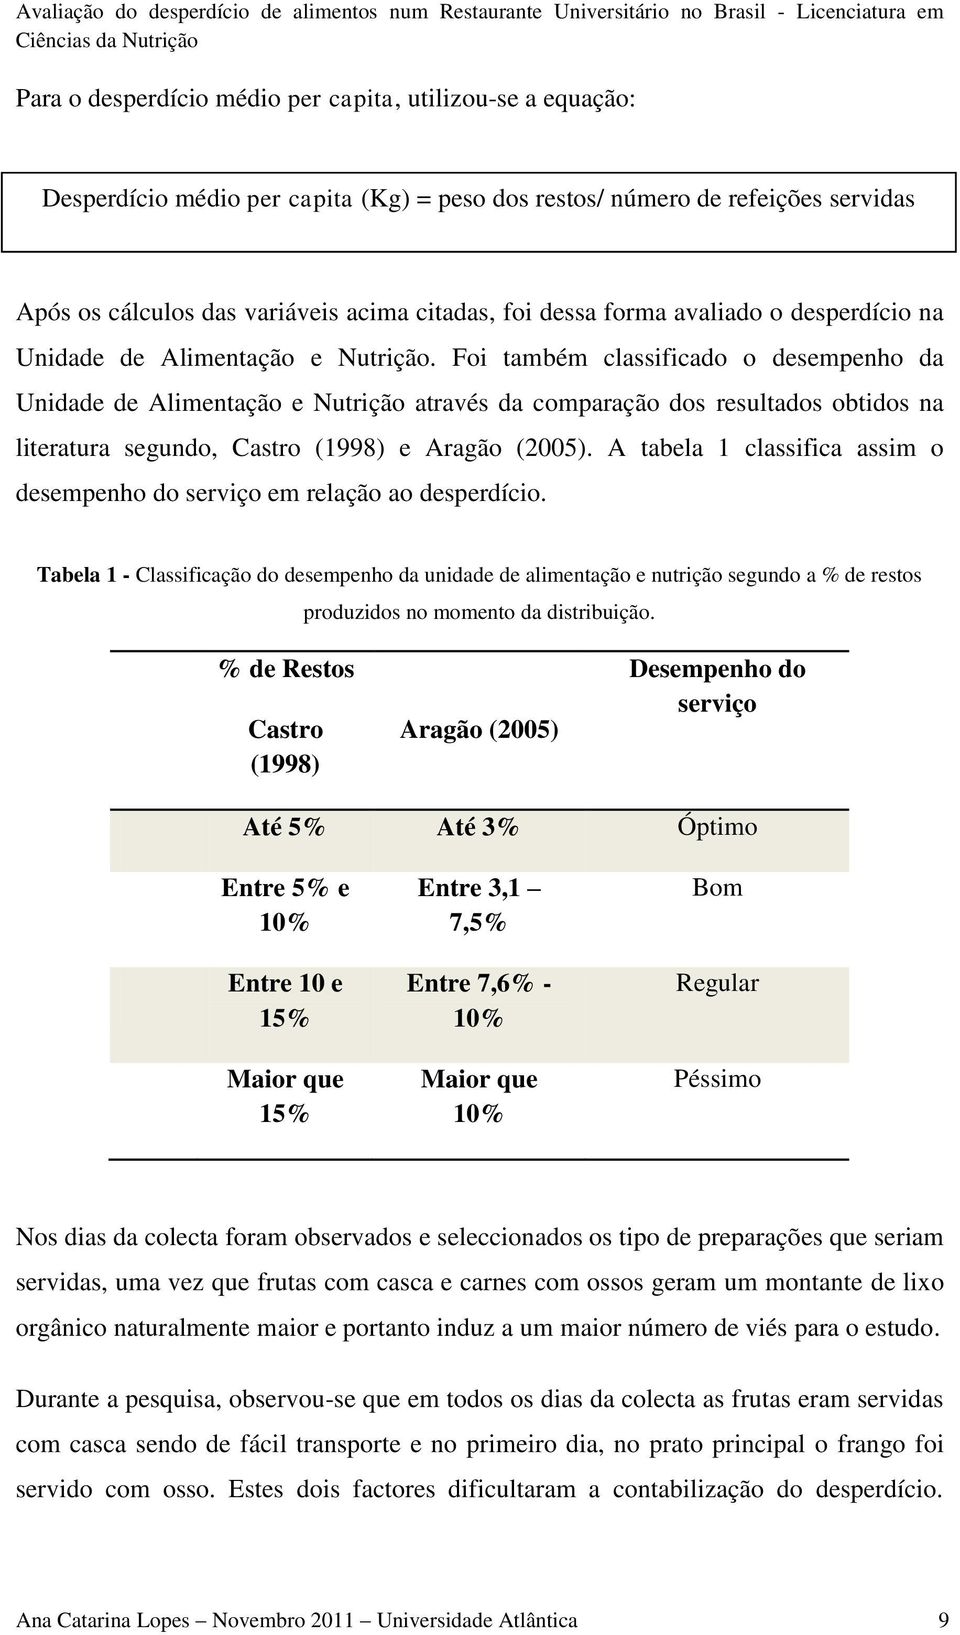 Foi também classificado o desempenho da Unidade de Alimentação e Nutrição através da comparação dos resultados obtidos na literatura segundo, Castro (1998) e Aragão (2005).